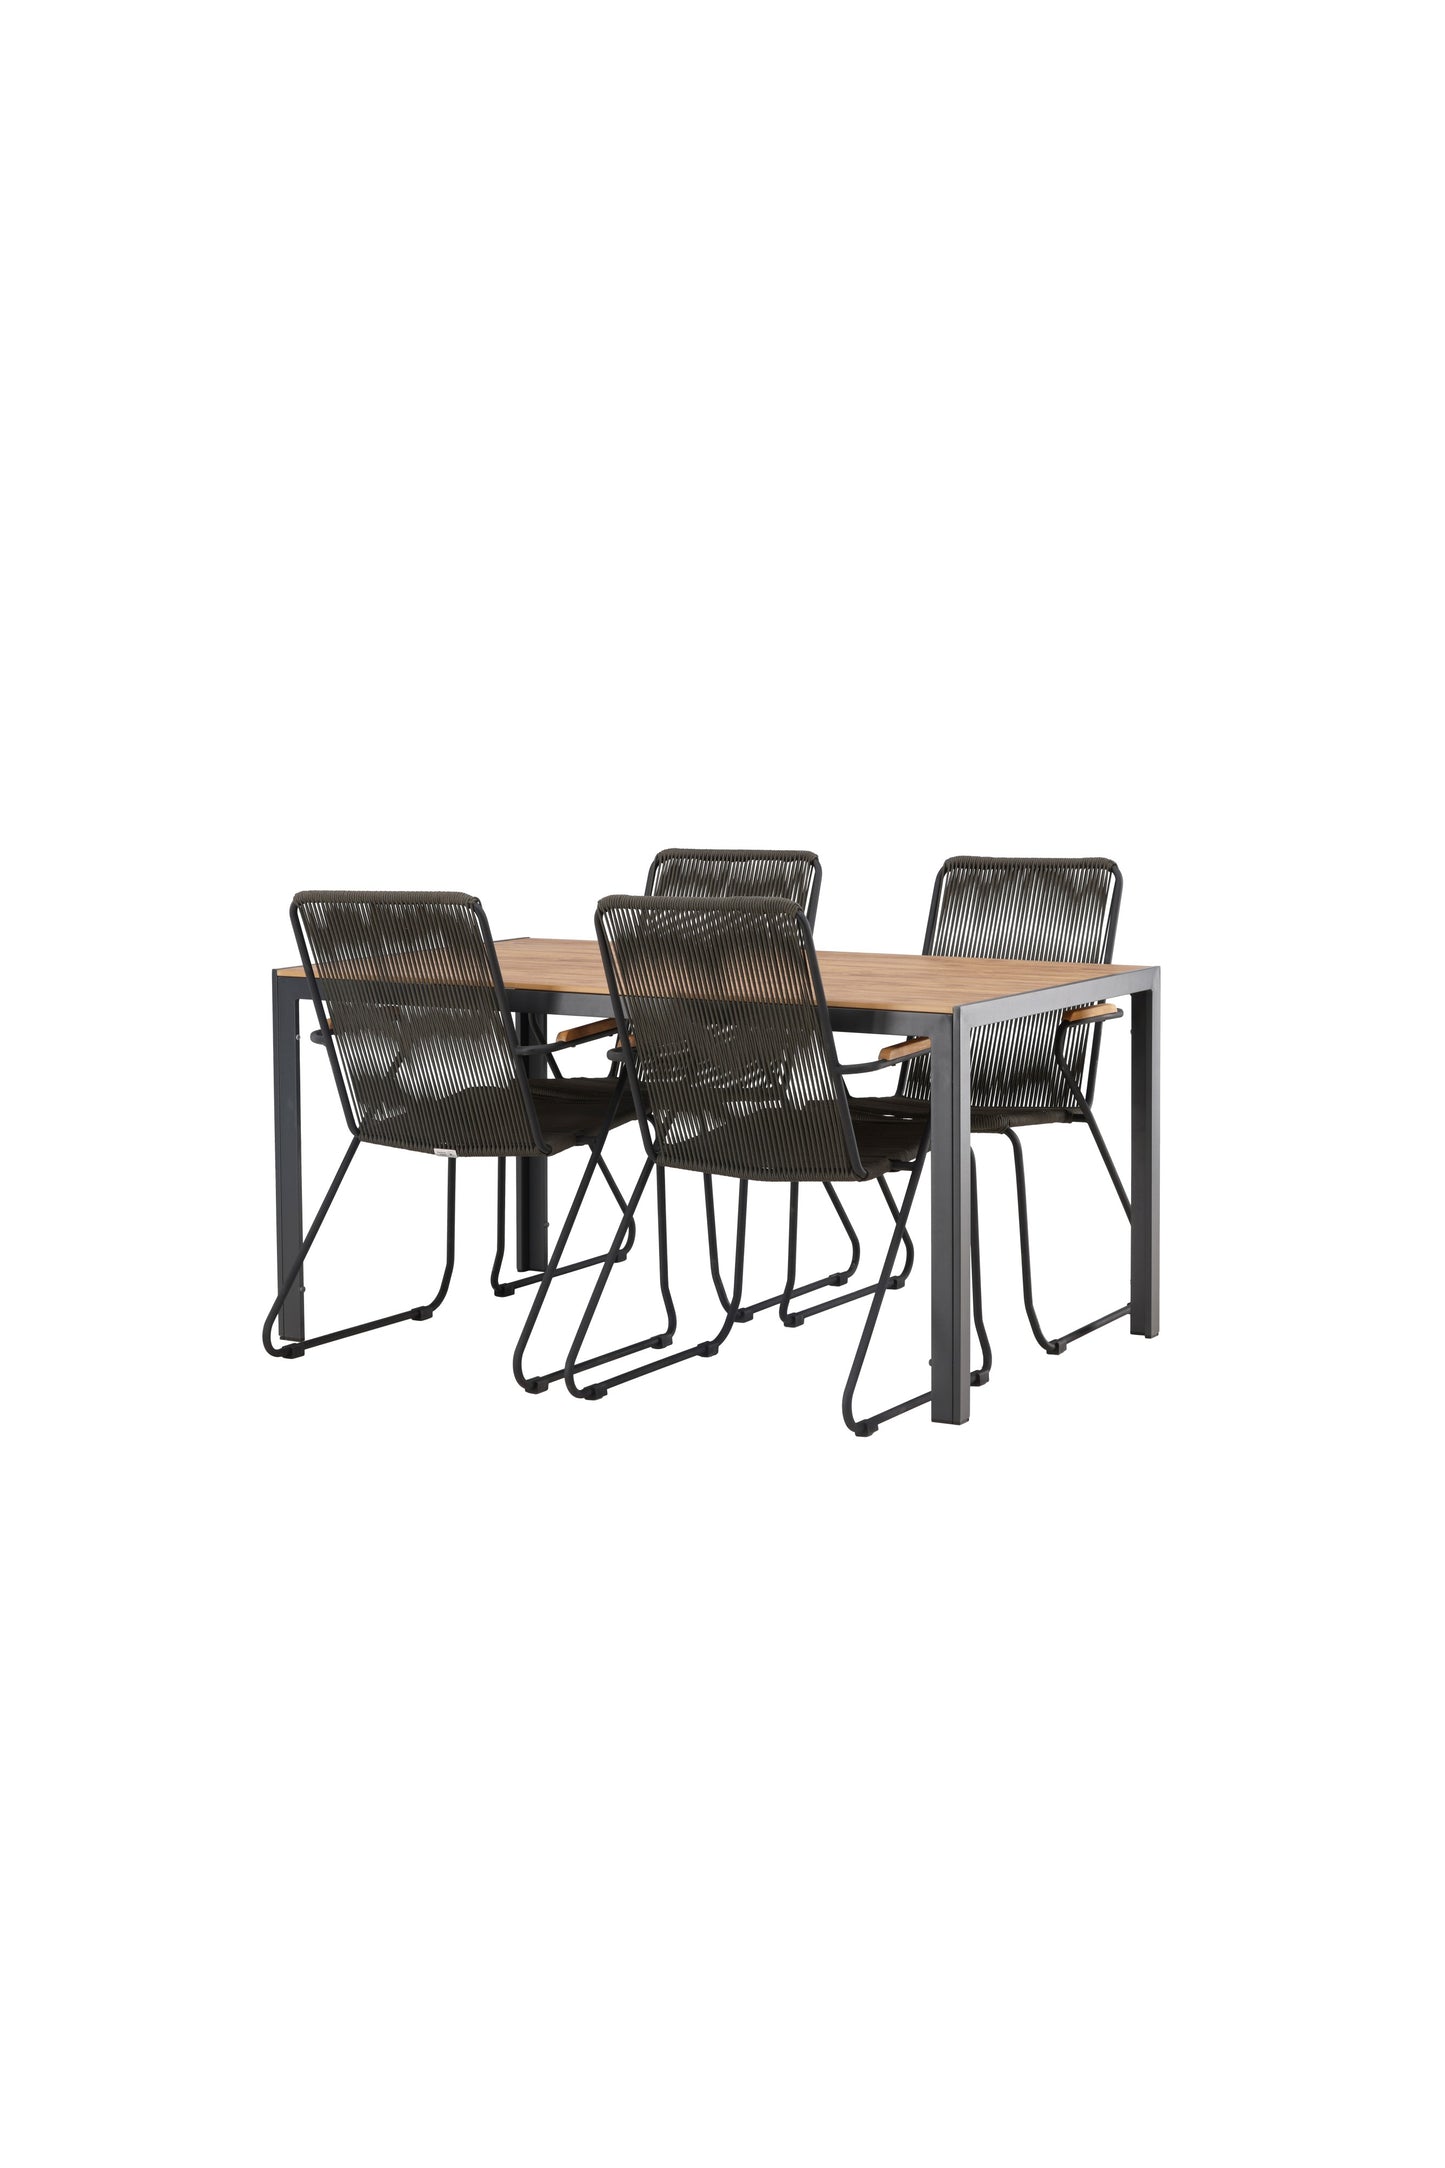 Break - Spisebord, Aluminium - Sort / Natur Rektangulær 90*150* + Bois stol Stål - Sort / Mørkegråt Reb